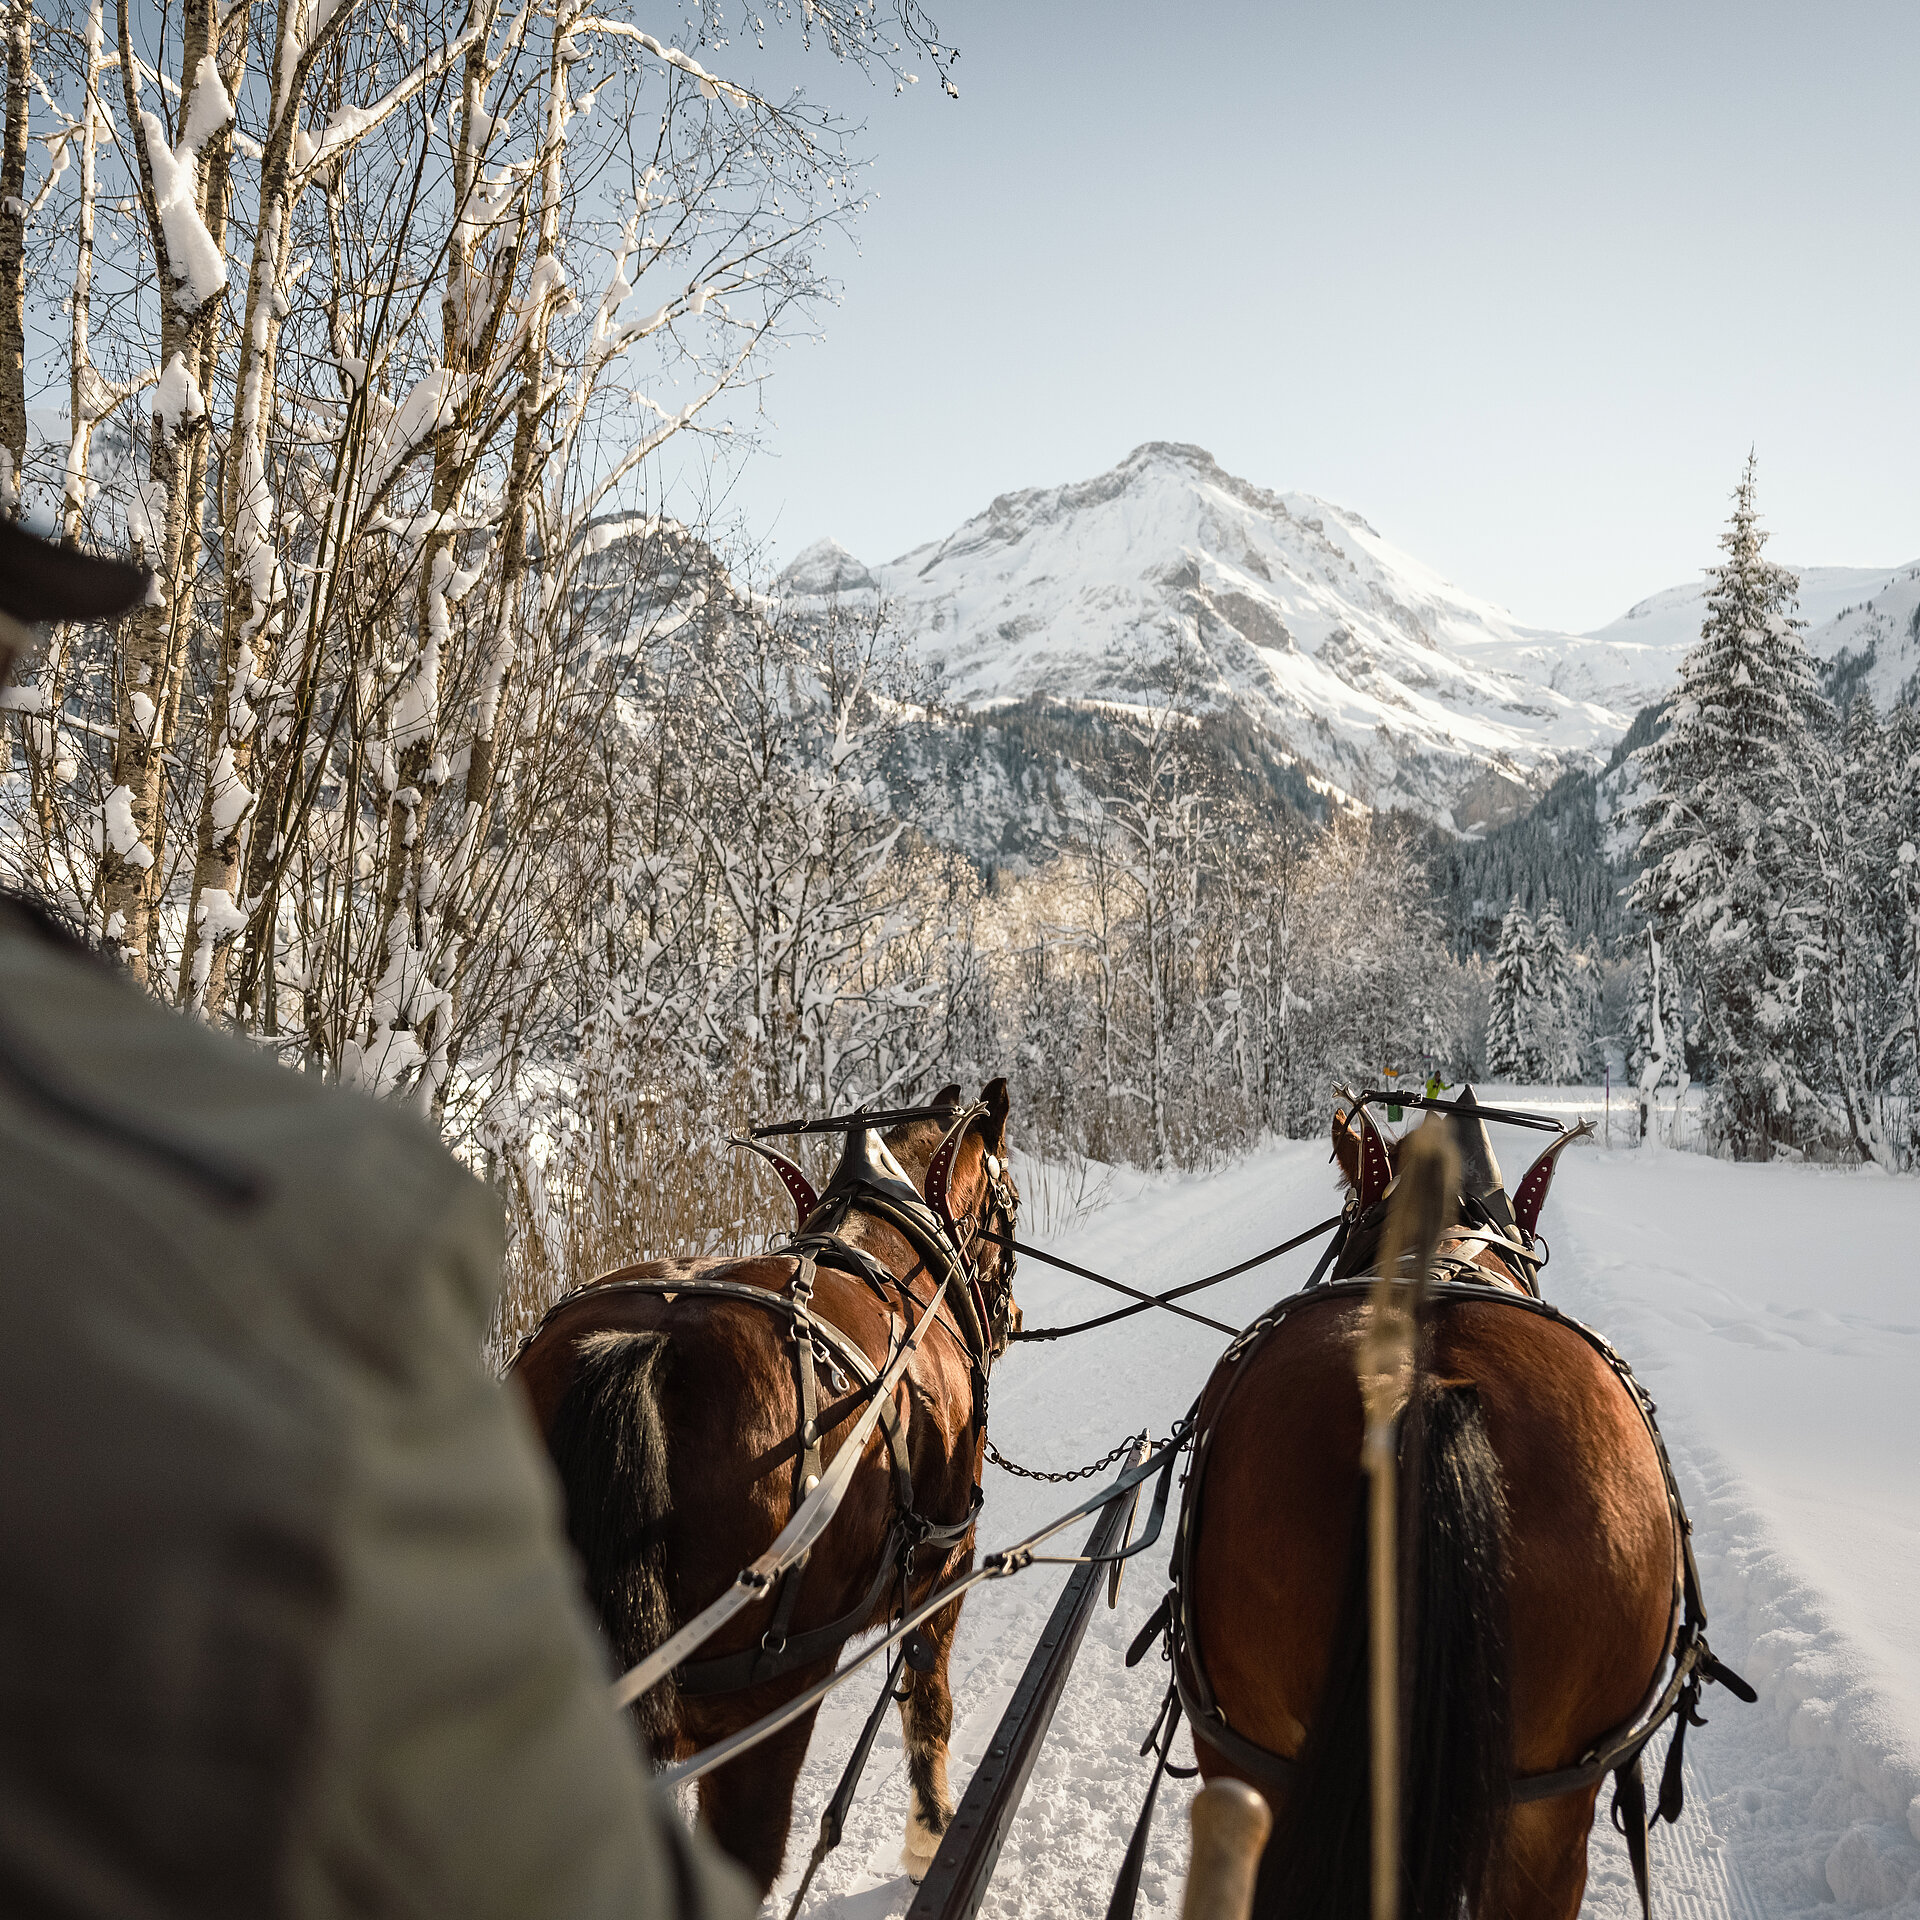 <p>Aus der Sicht des Kutschers, sieht man auf zwei Pferderücken, die einen Schlitten ziehen. Die Landschaft ist eingeschneit und zuhinterst sieht man einen felsigen Berg.</p>